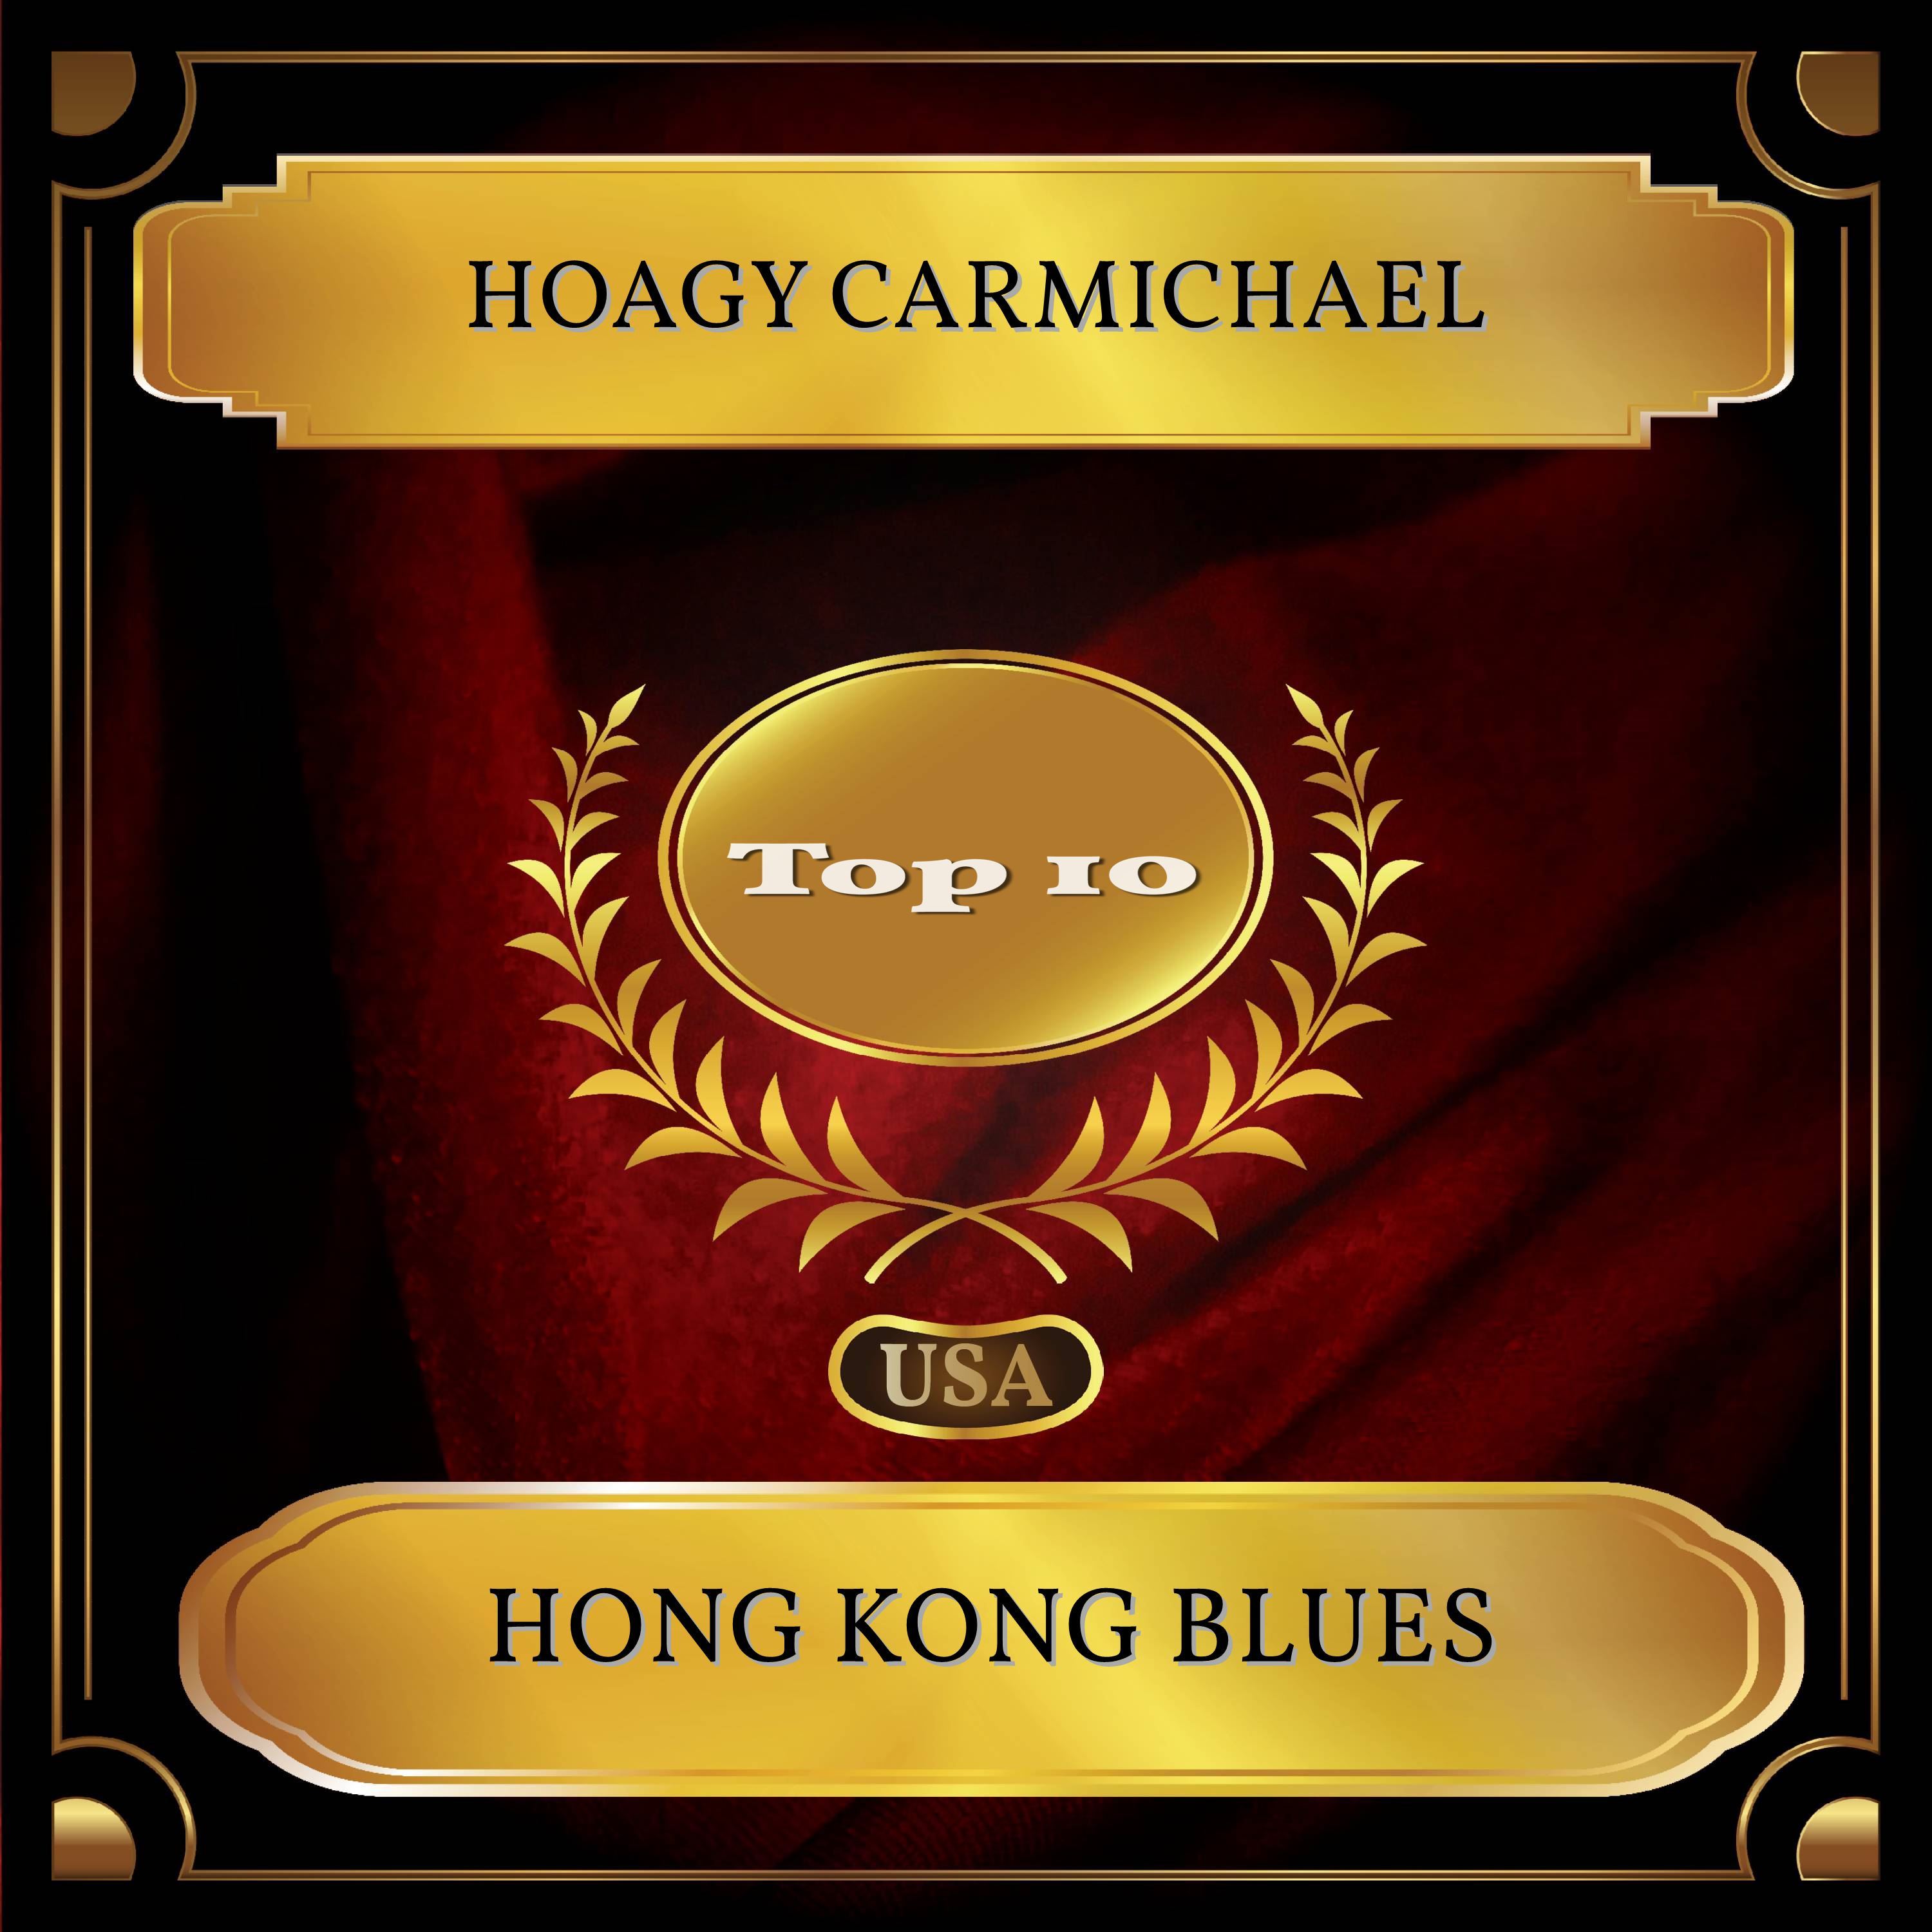 Hong Kong Blues (Billboard Hot 100 - No. 06)